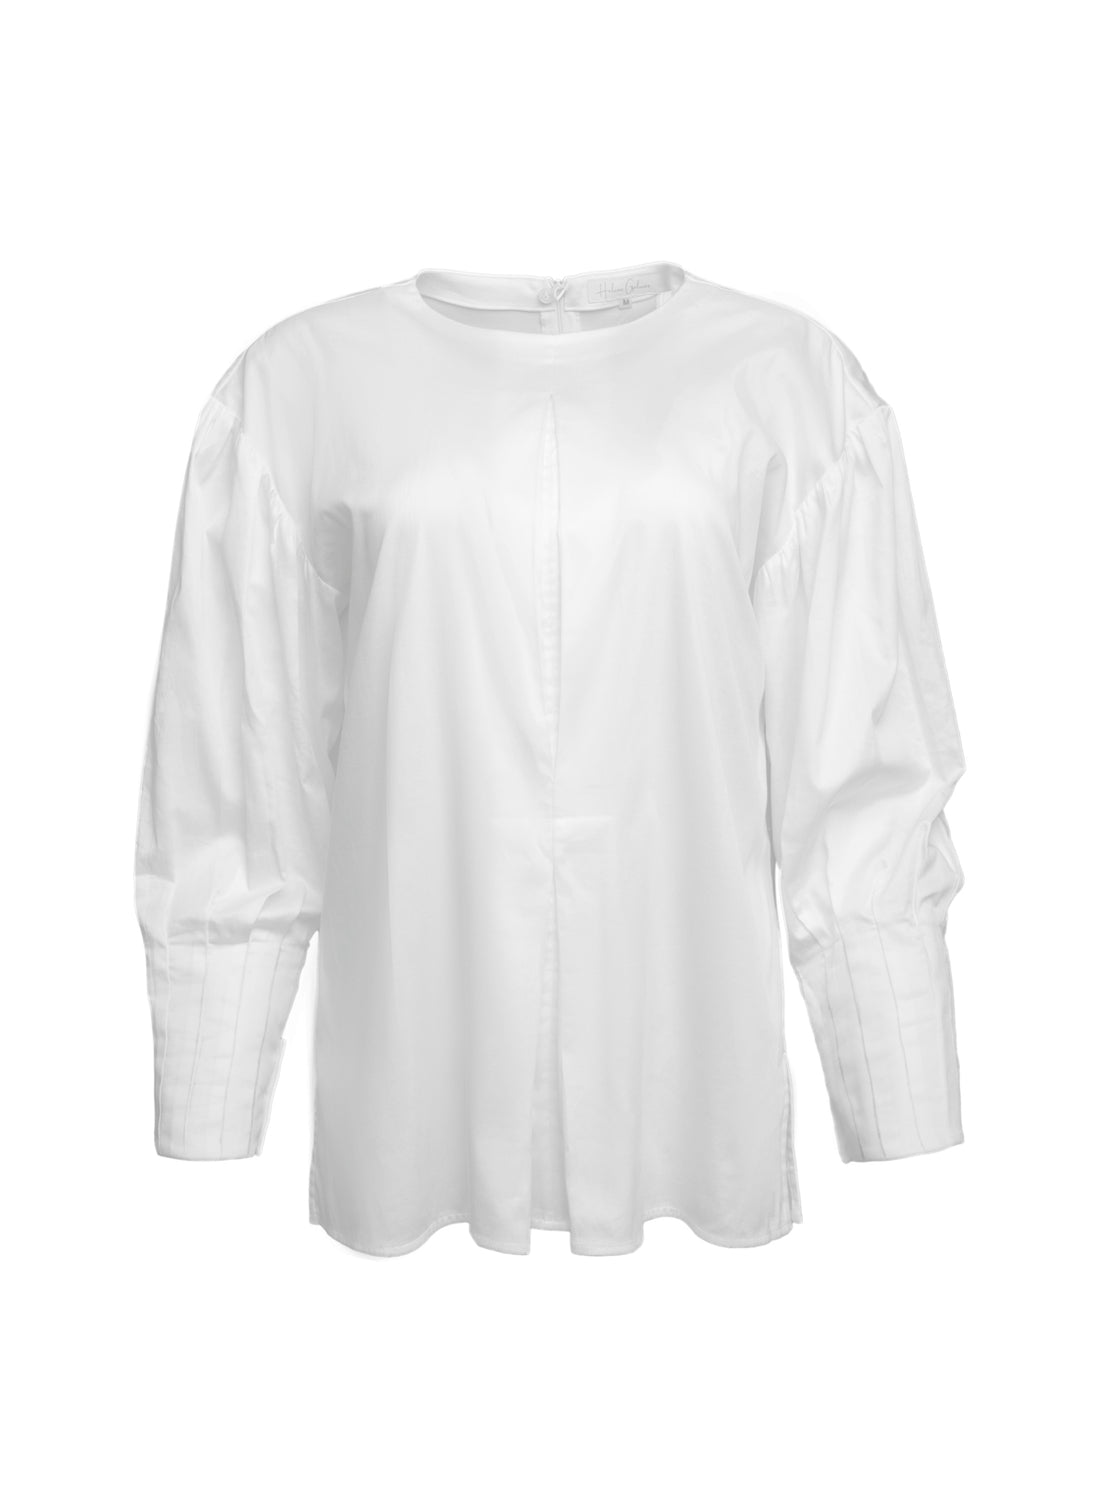 Außergewöhnliche, weiße Basic Bluse aus 100% Baumwolle mit Rundhalsausschnitt, Kellerfalte mittig und seitlichen Schlitzen